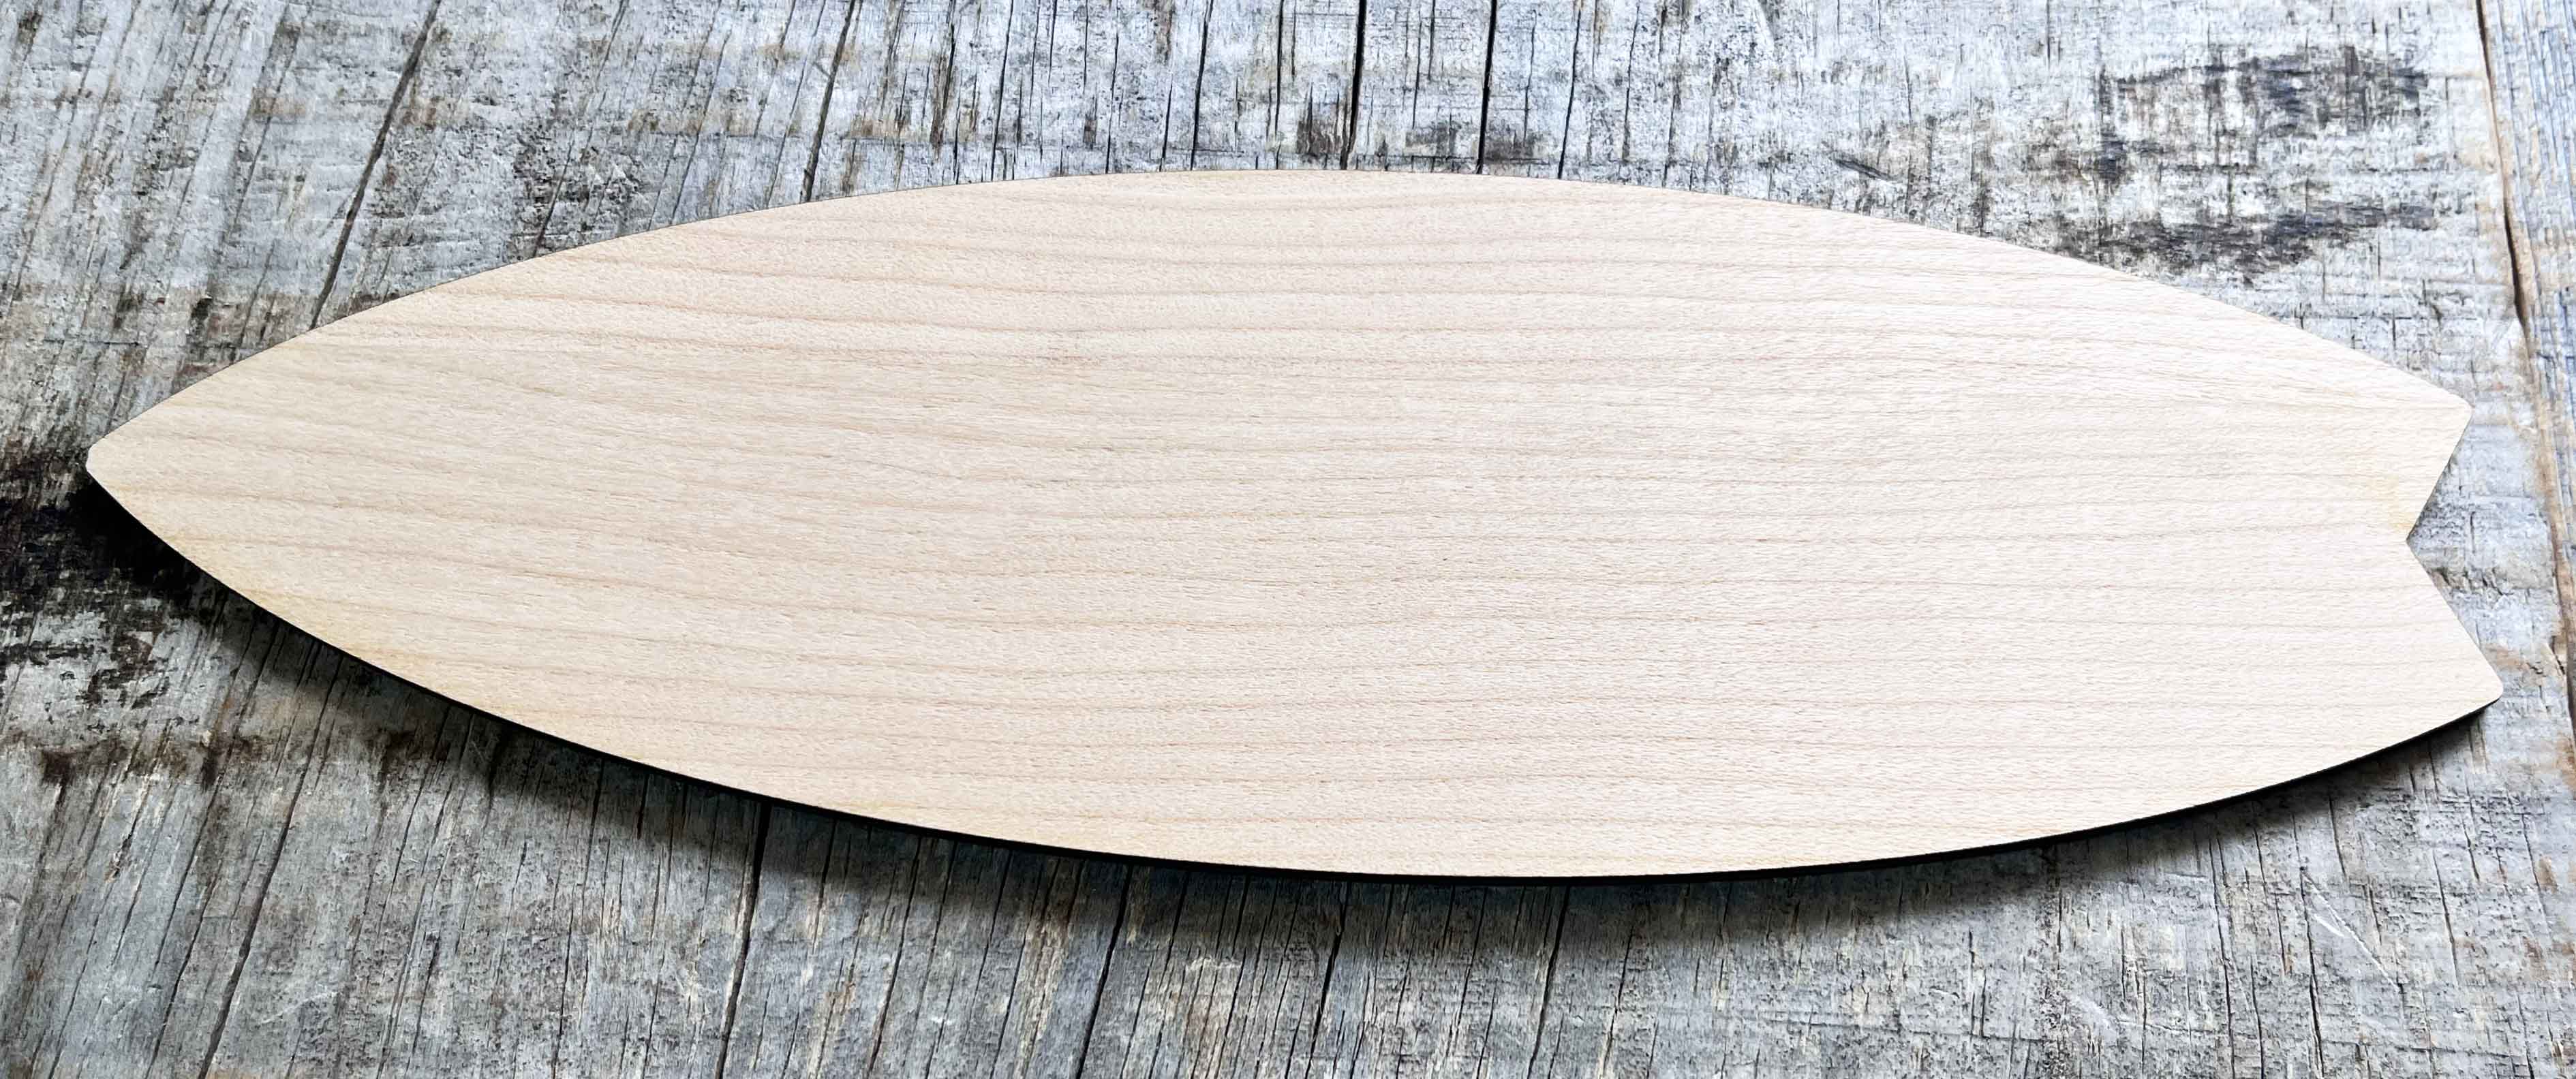 Surfboard Laser Cut Wood Blank.